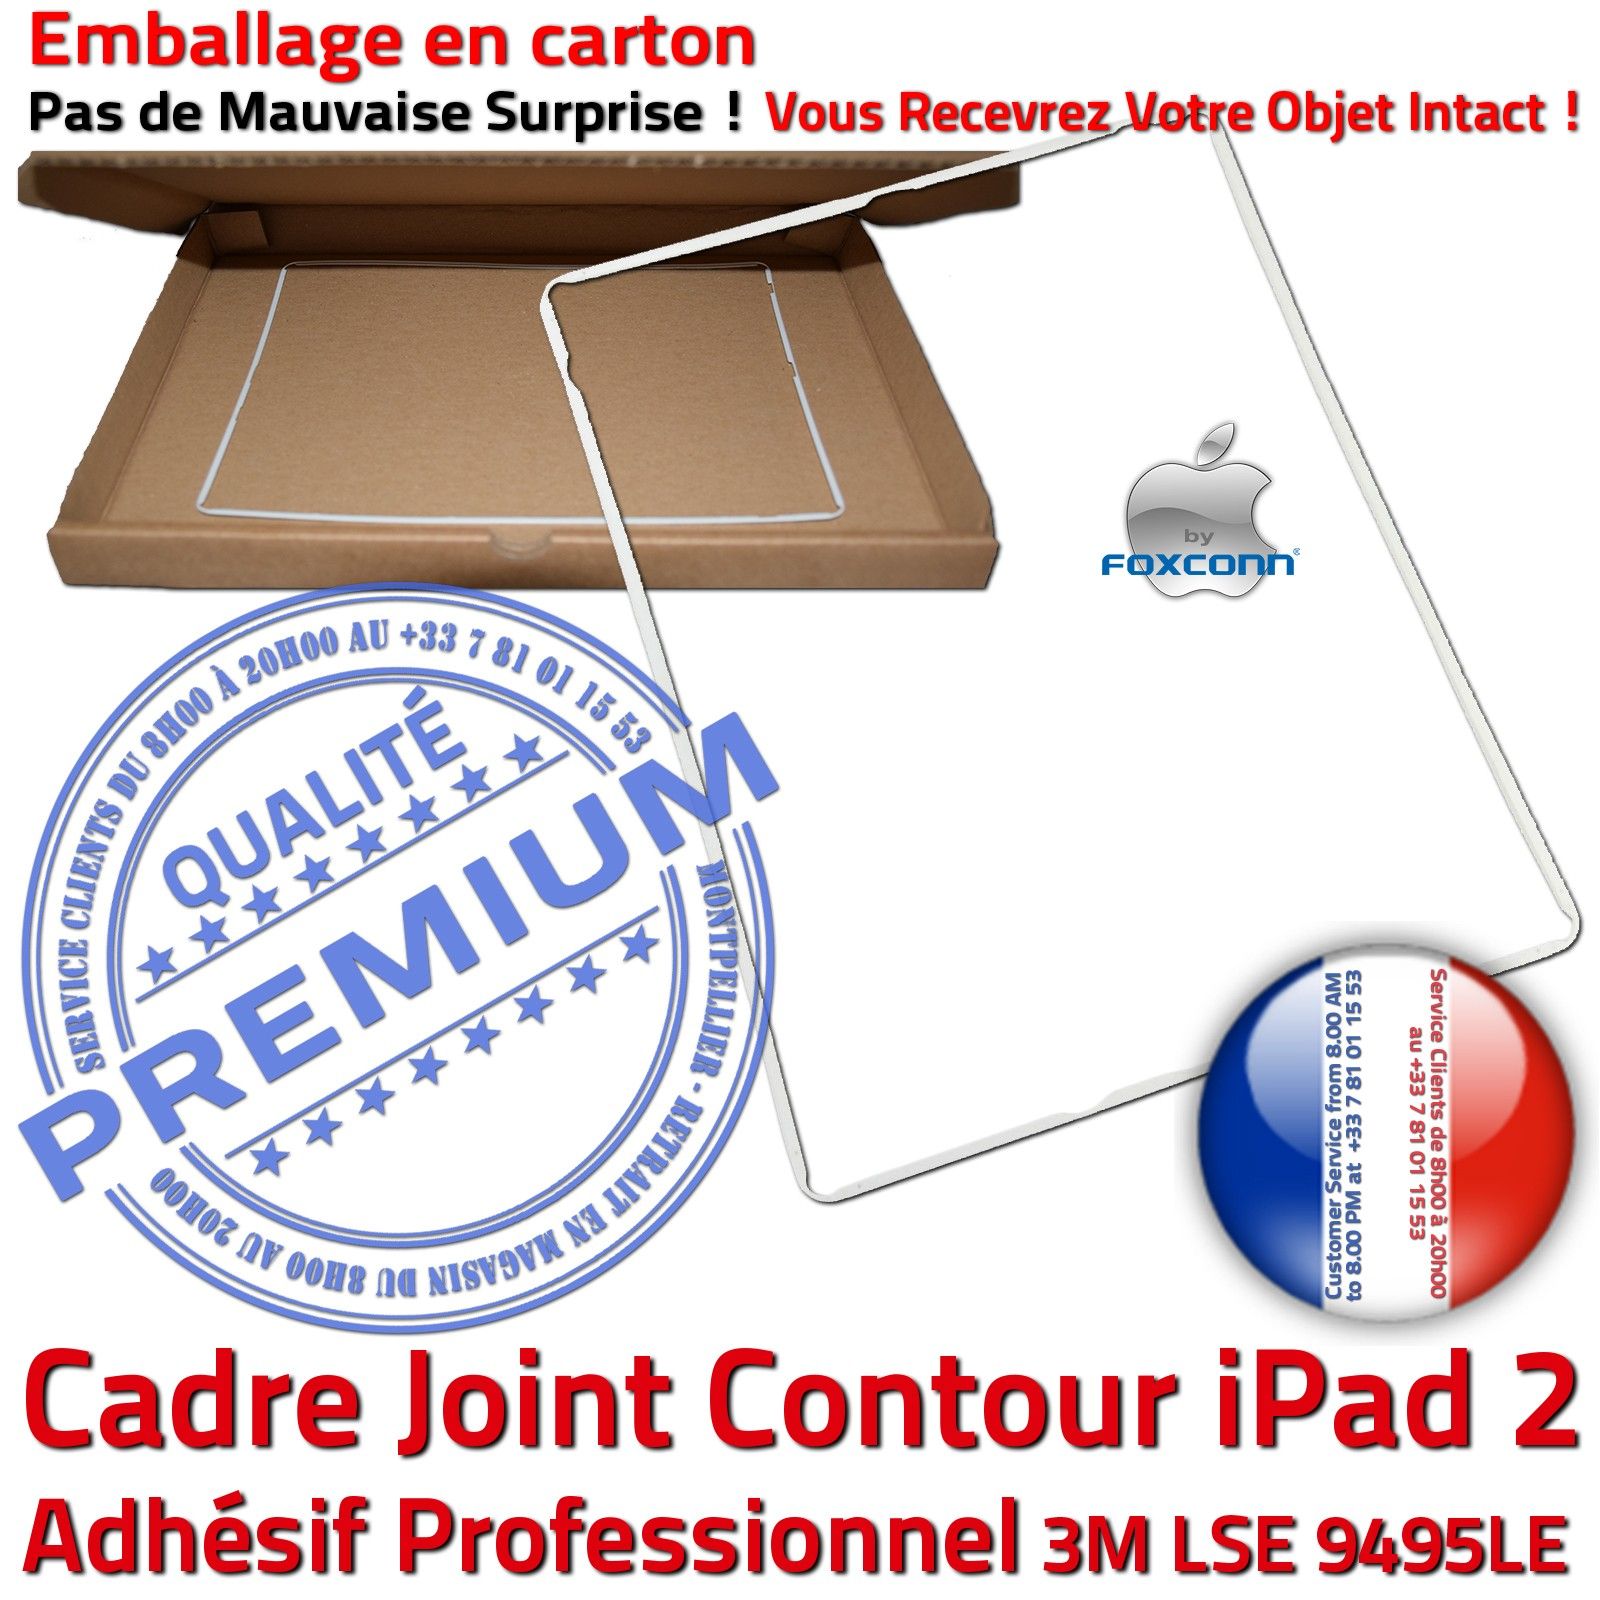 KIT Réparation iPad AIR A1474 Vitre Tactile Blanche PREMIUM Qualité Verre  Oléophobe Adhésif Precollé Bouton Nappe HOME Outils